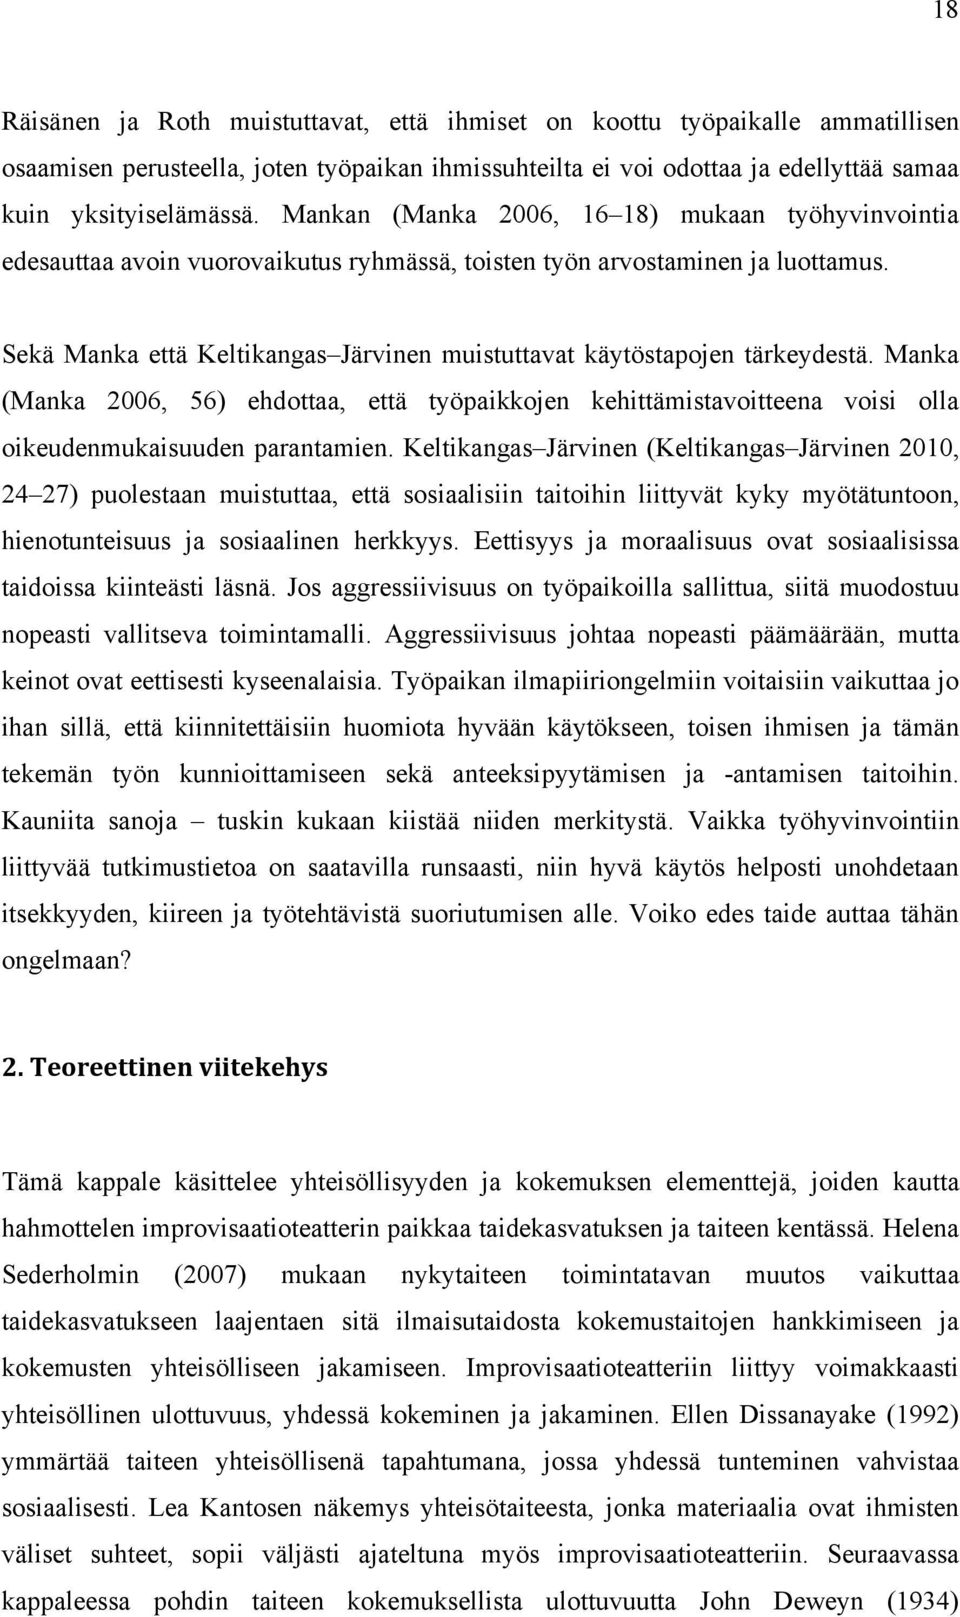 Sekä Manka että Keltikangas Järvinen muistuttavat käytöstapojen tärkeydestä. Manka (Manka 2006, 56) ehdottaa, että työpaikkojen kehittämistavoitteena voisi olla oikeudenmukaisuuden parantamien.